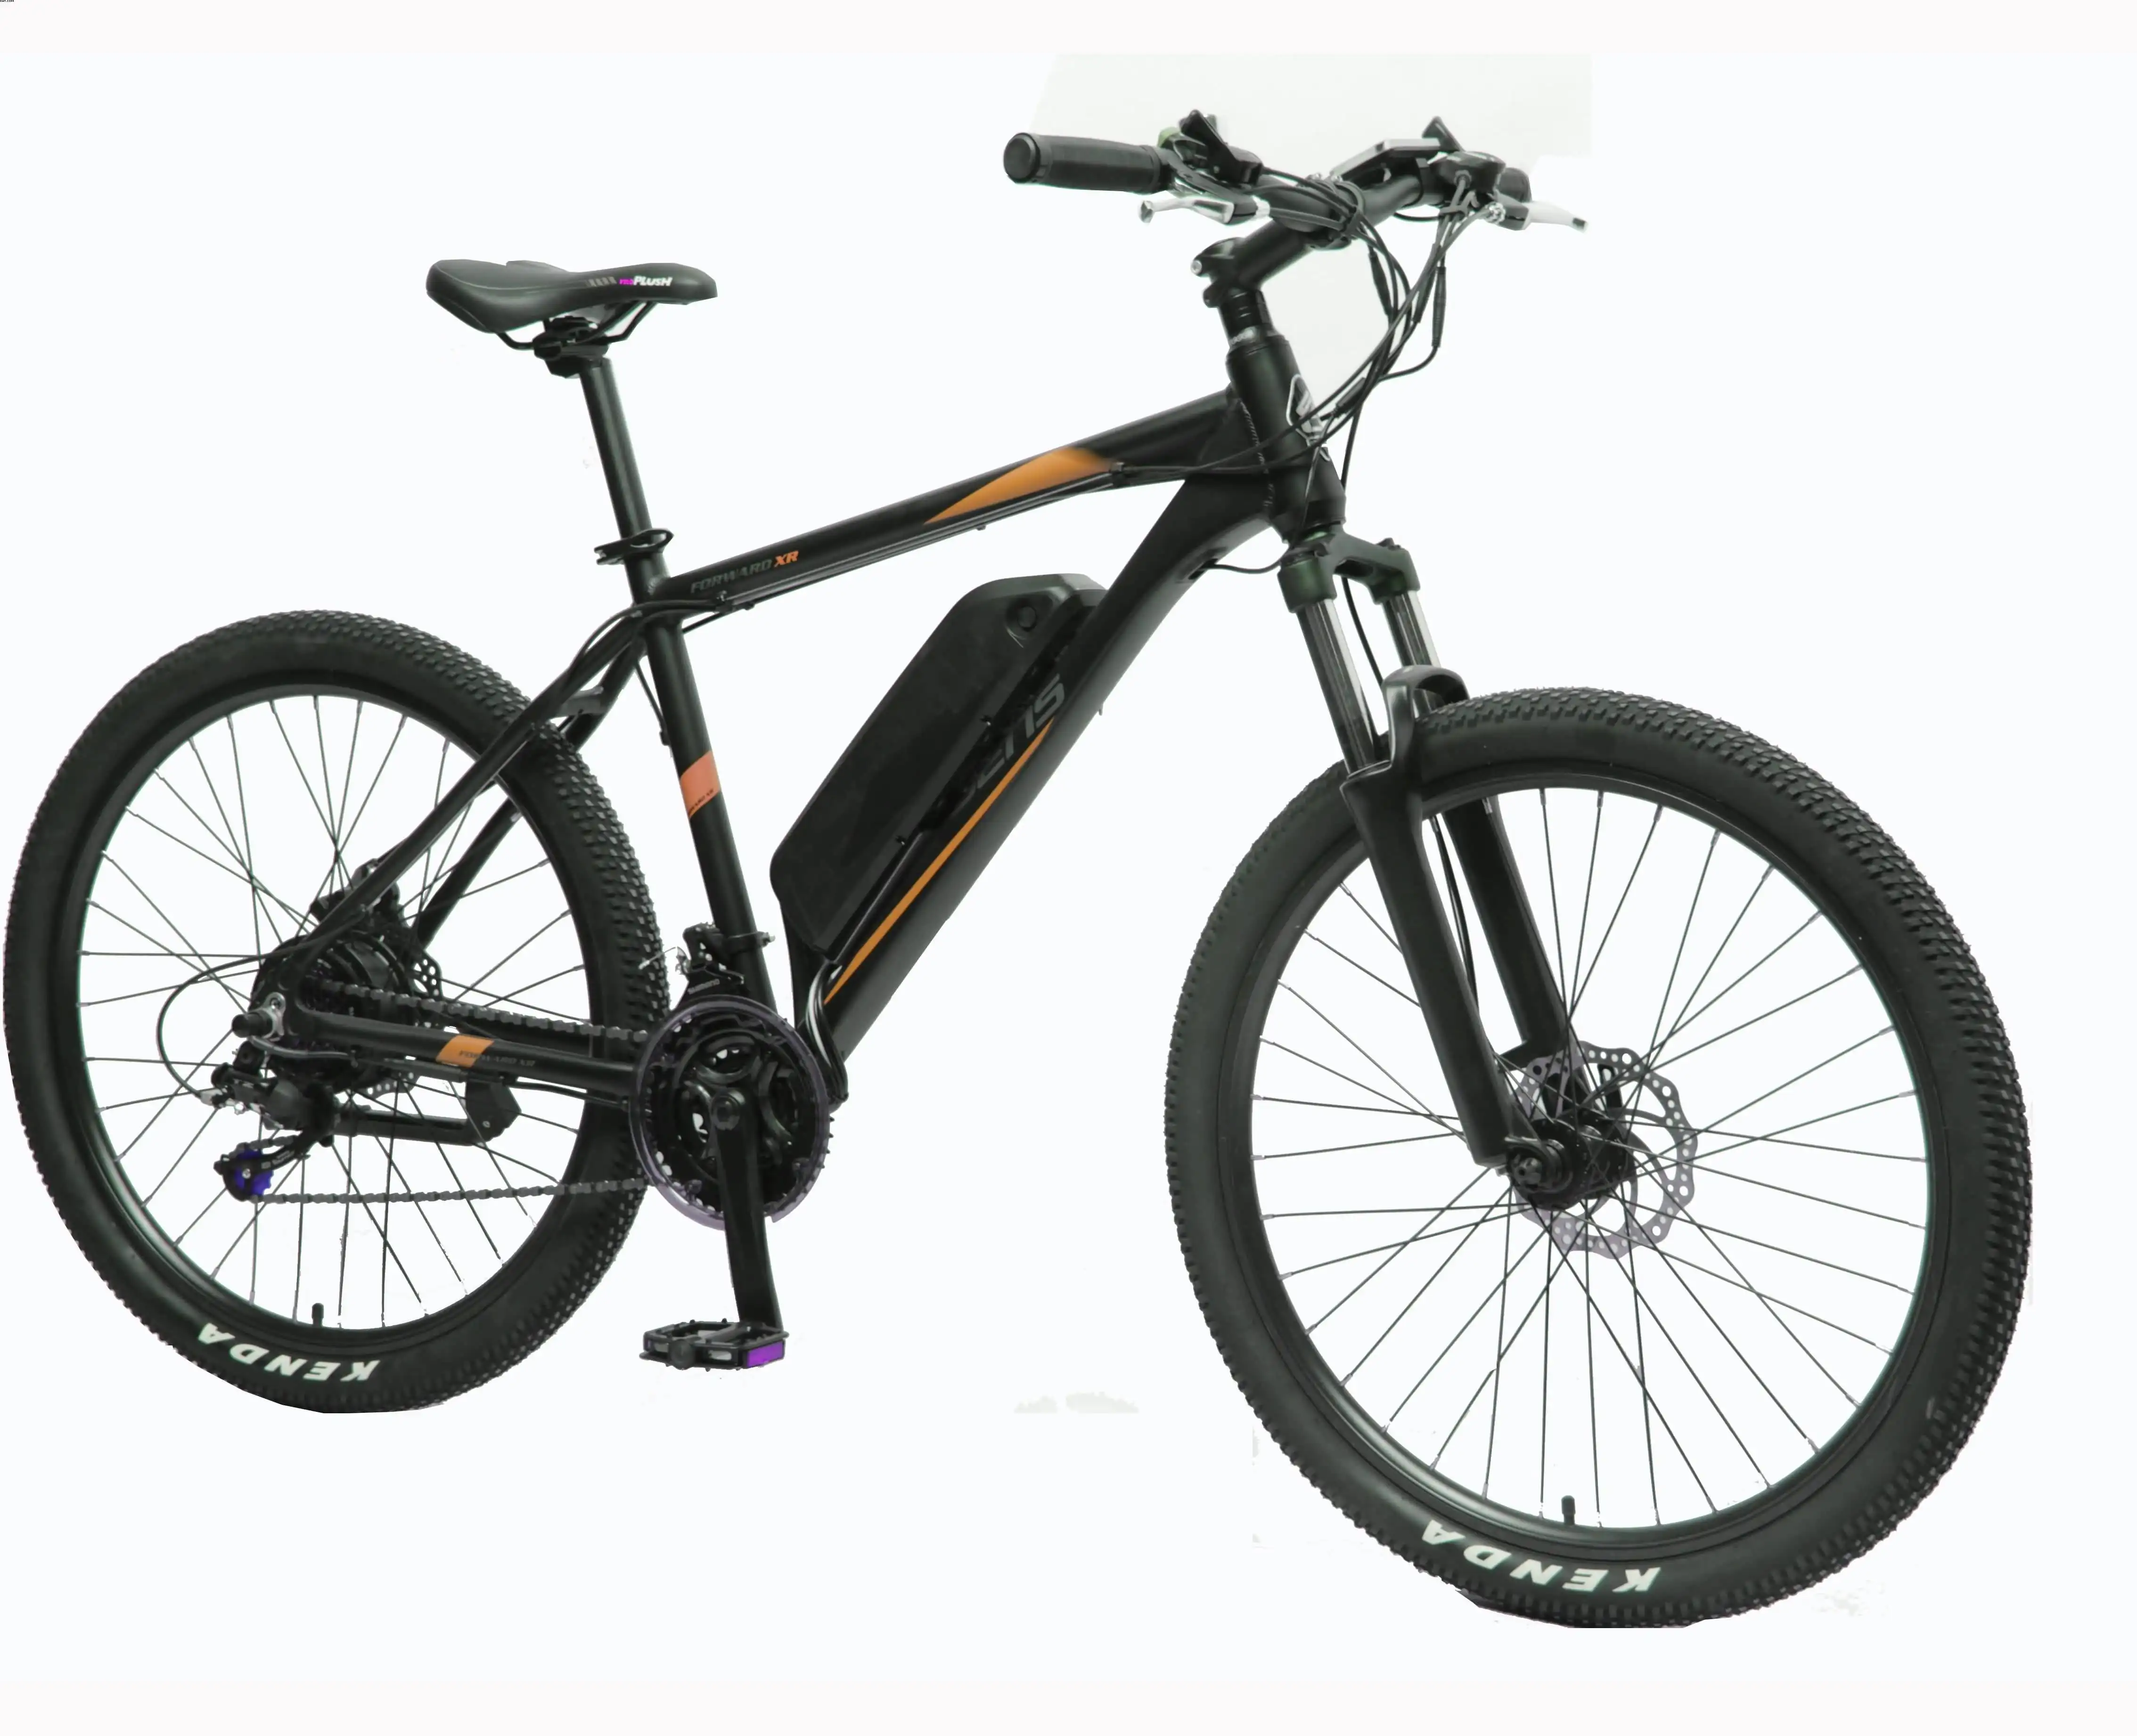 TXED Light Frame Forte Qualidade 27.5 E MTB Elétrica Mountain Bike Bicicleta Big Power Bike